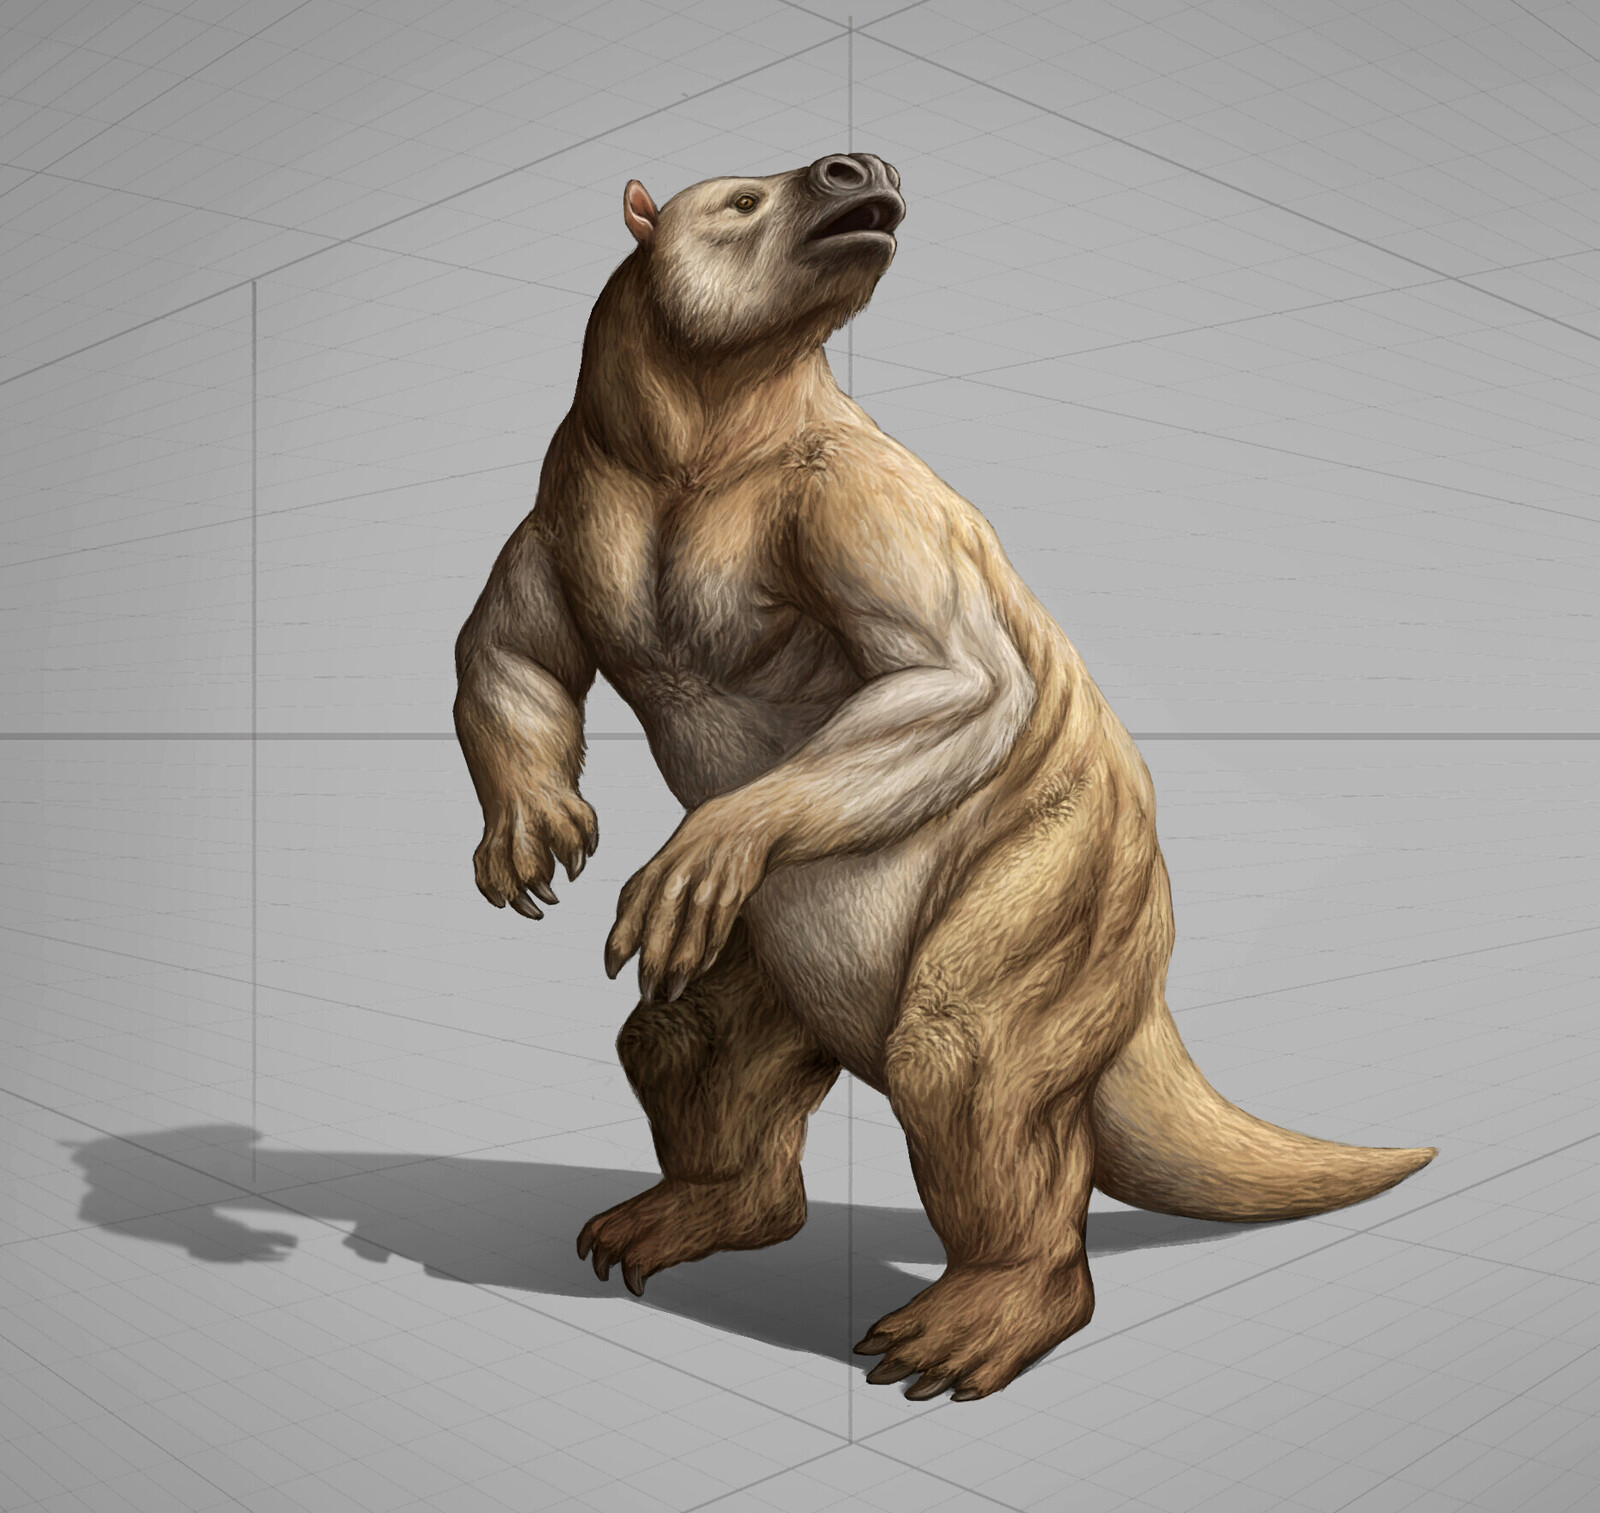 Prehistoric Animal Concepts – Giant Sloth